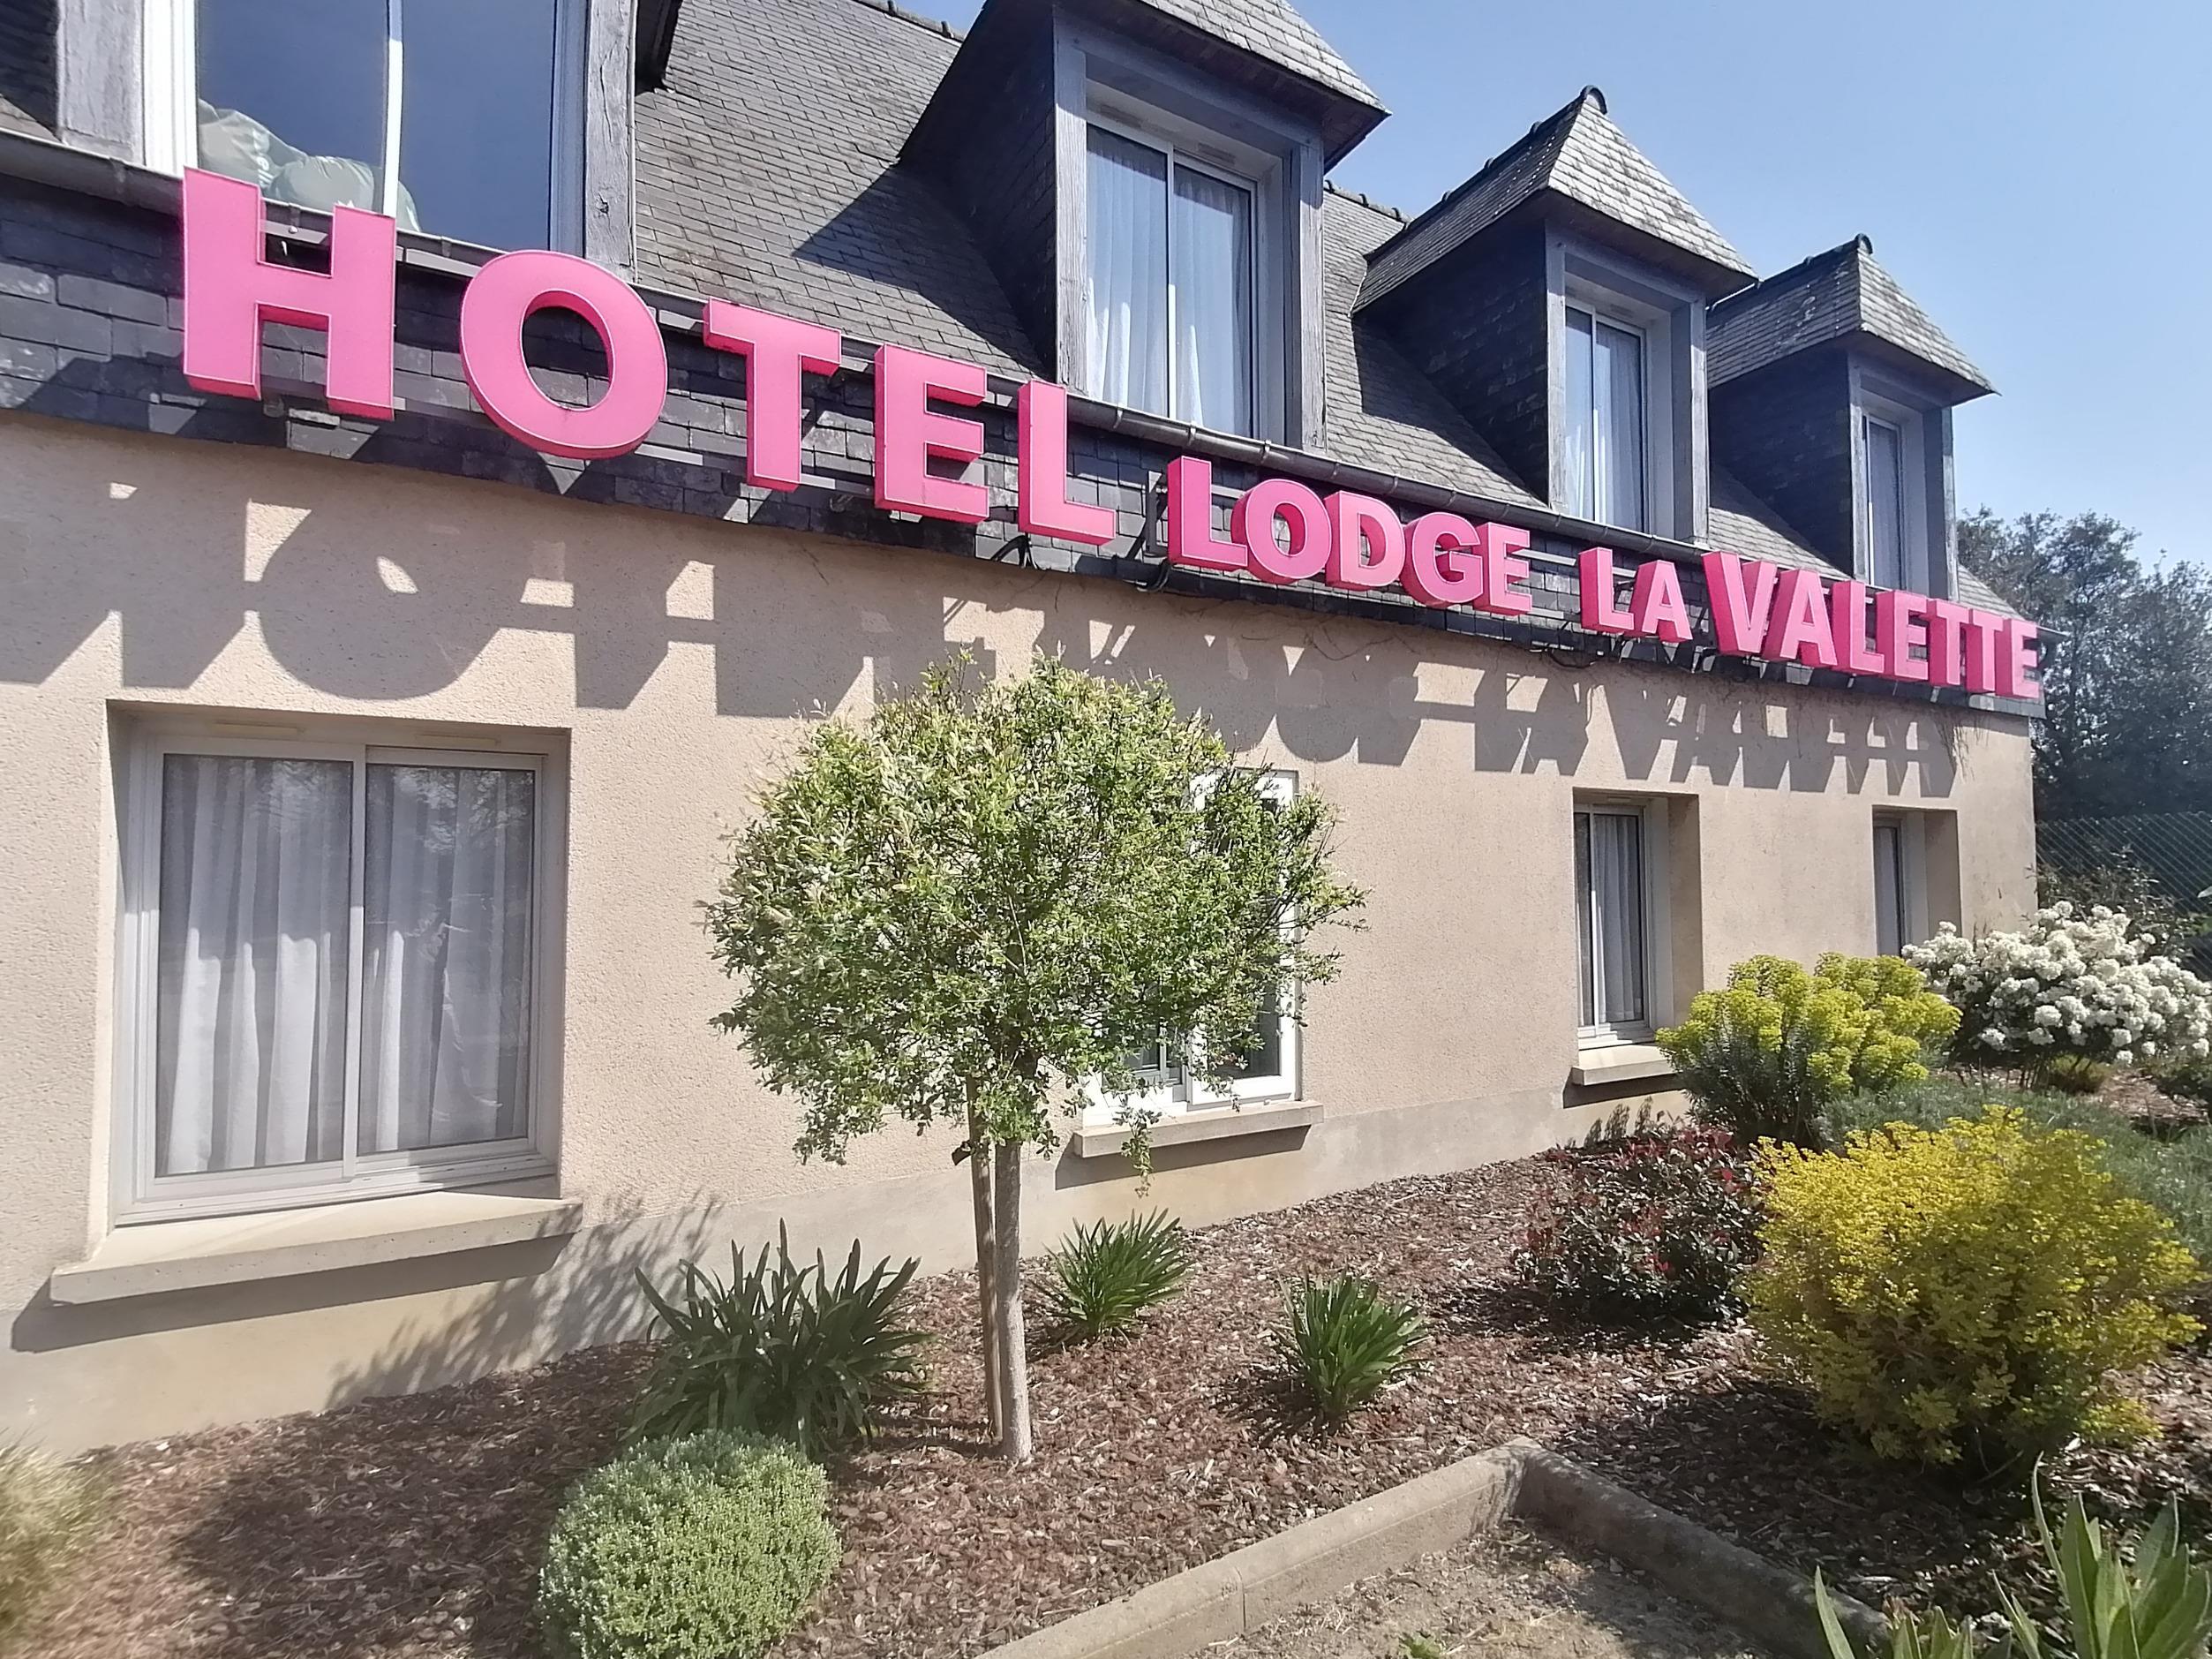 Logis Hôtel Lodge la Valette